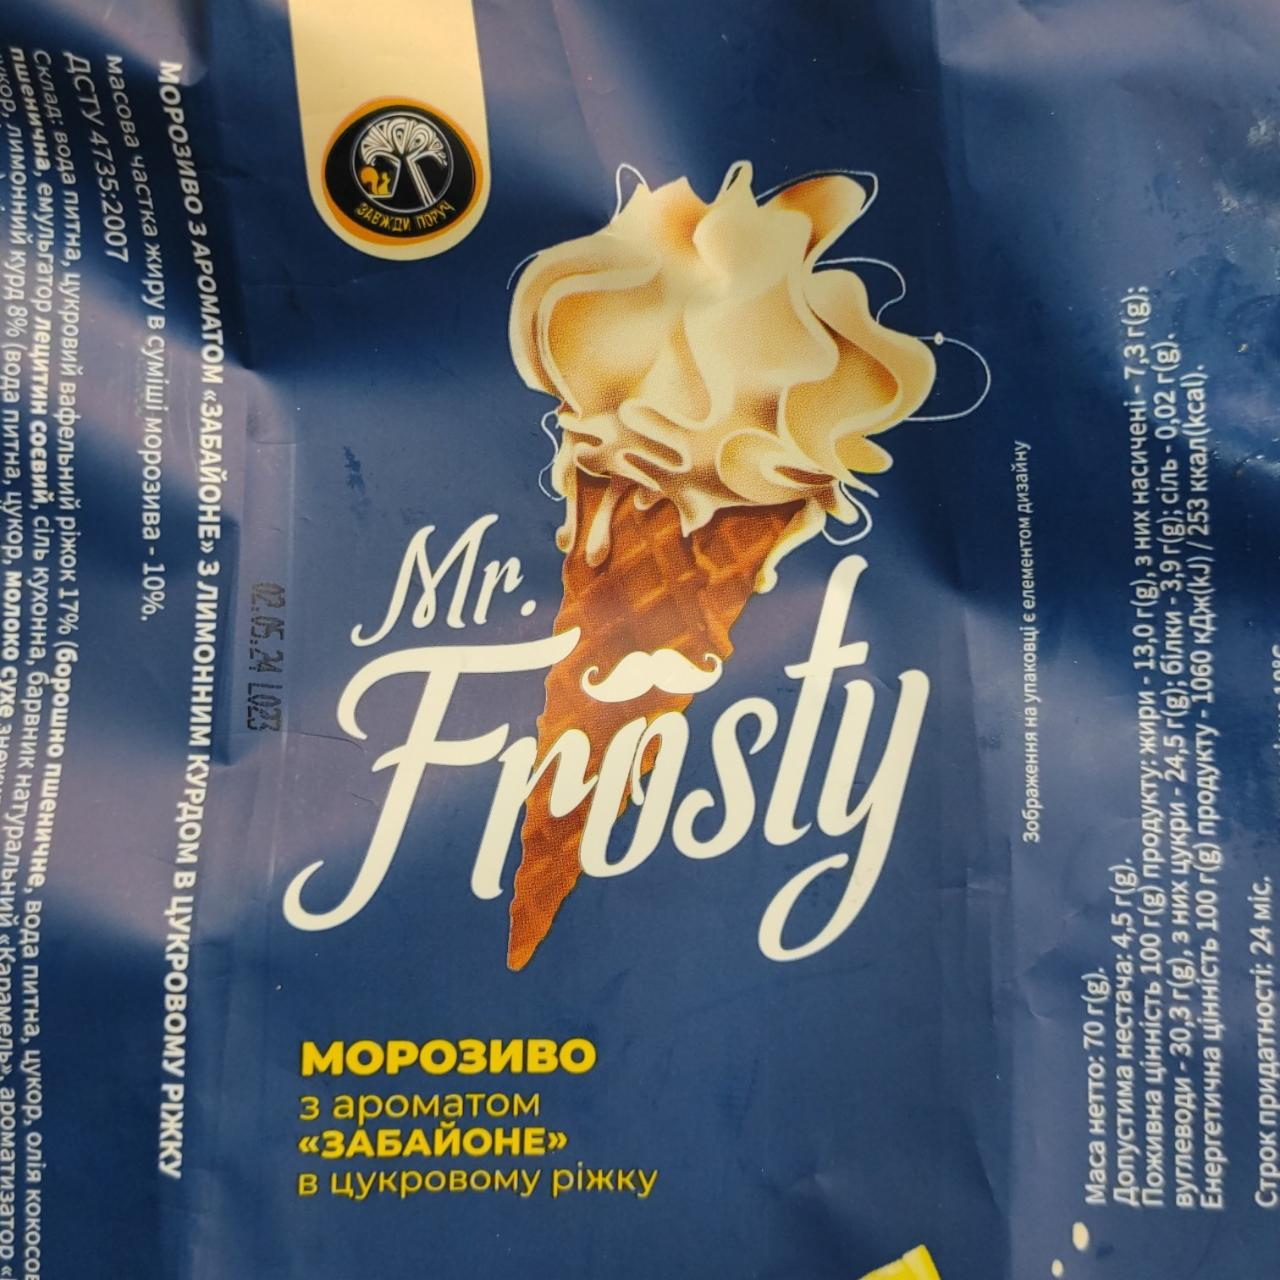 Фото - Морозиво Mr. Frosty з ароматом Хабайоне у цукровому ріжку Завжди поруч